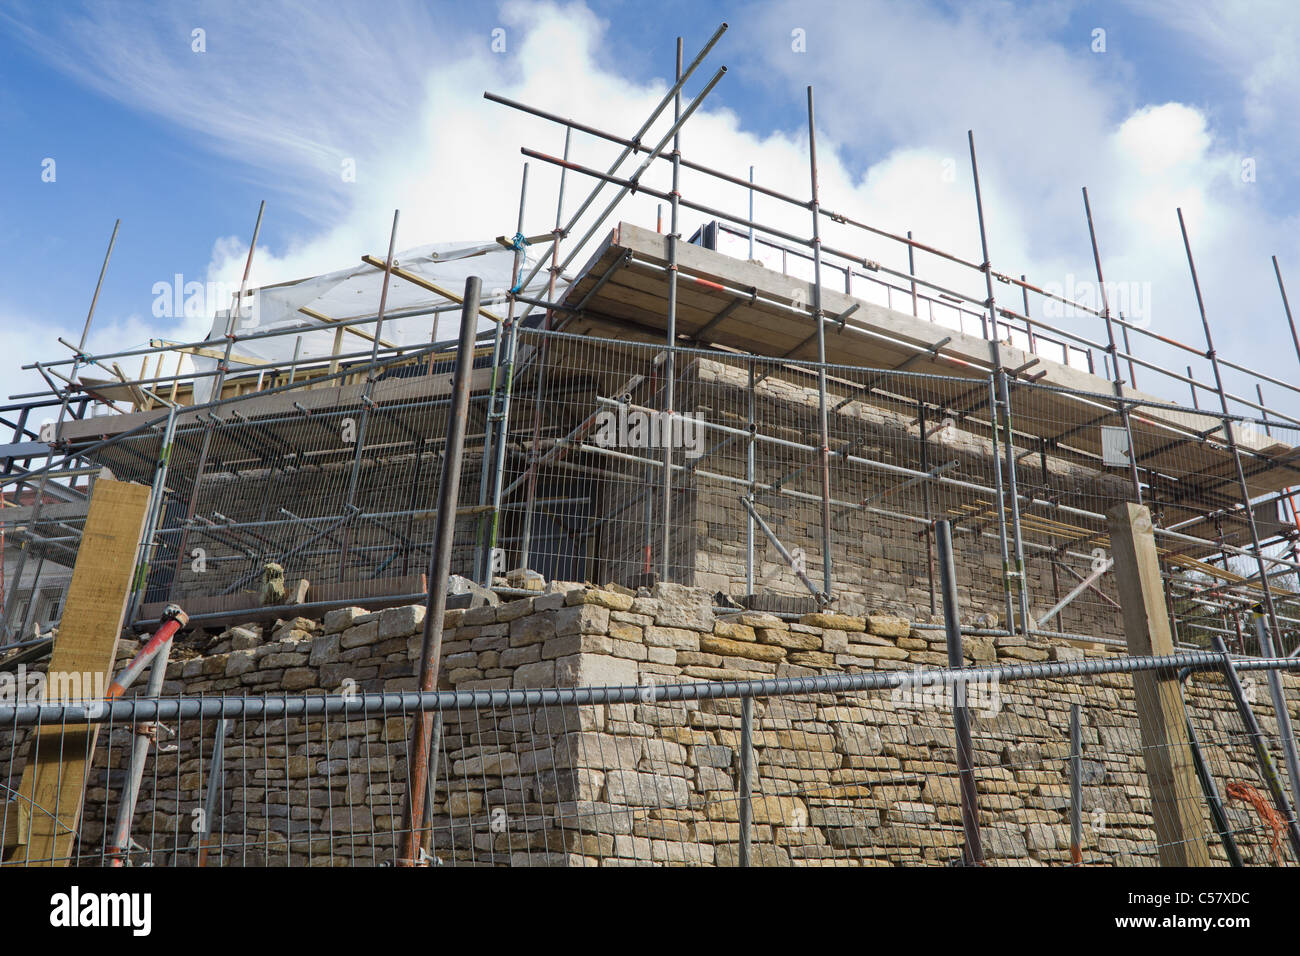 En cours de construction au Château Durlston, Swanage, Angleterre. Banque D'Images